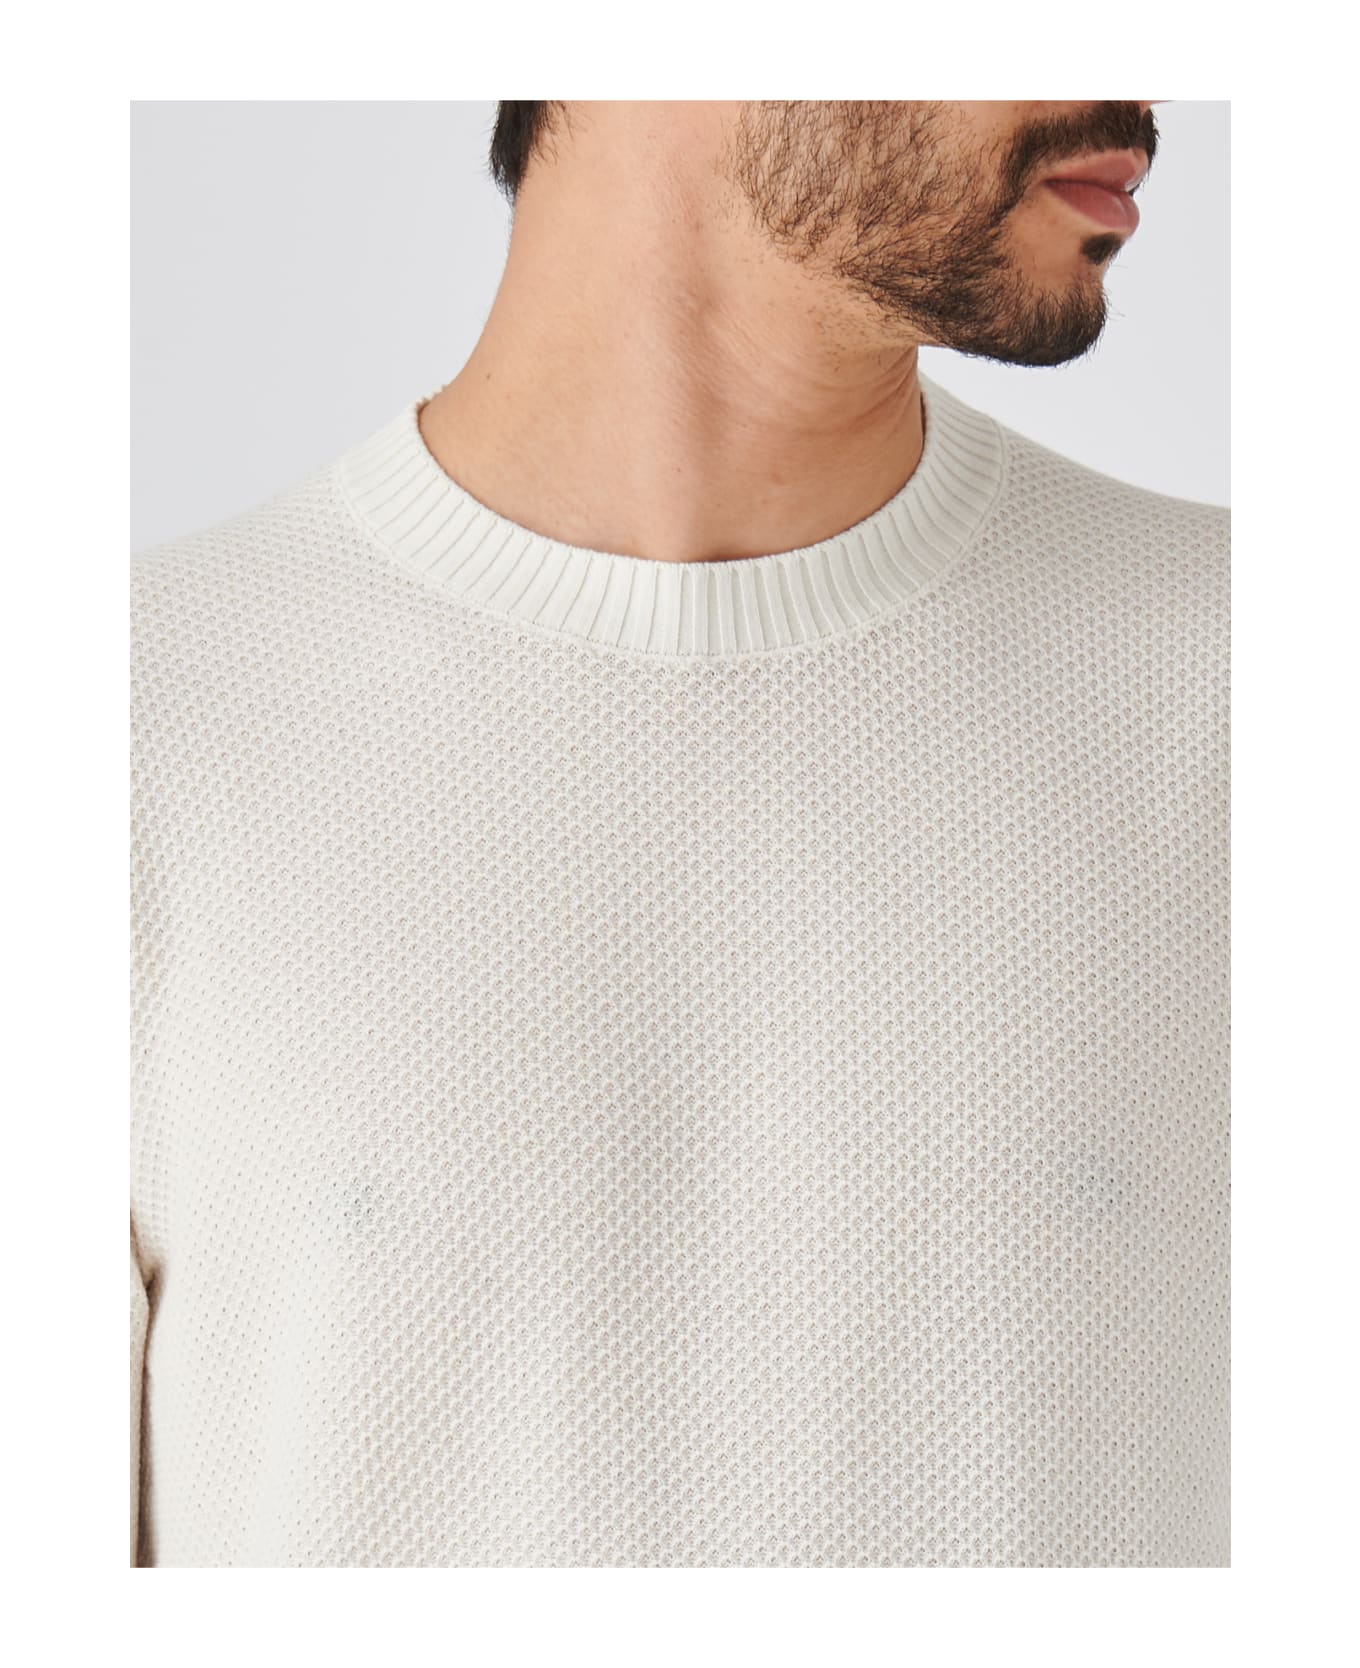 Gran Sasso Paricollo M/l Sweater - PANNA